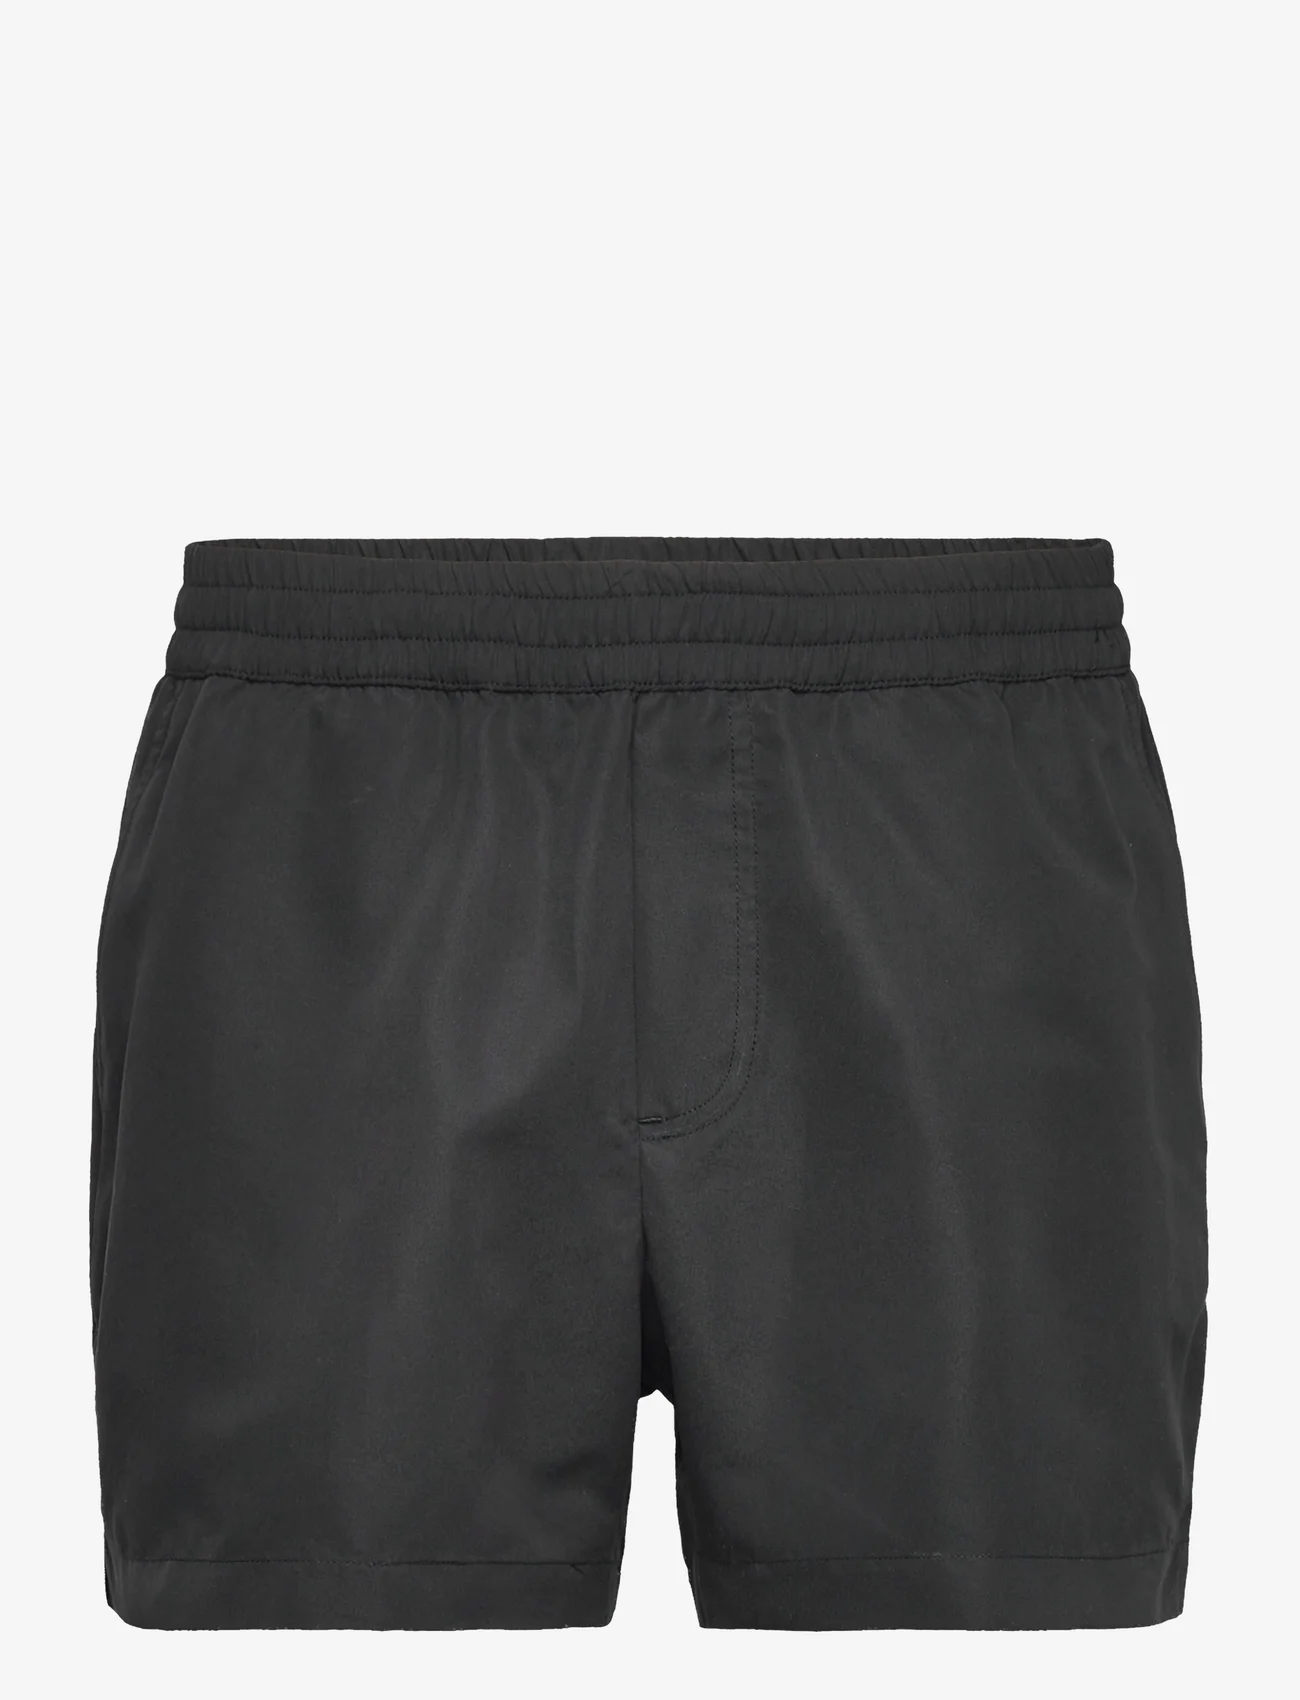 Wood Wood - Roy Solid Swim Shorts - uimashortsit - black - 0